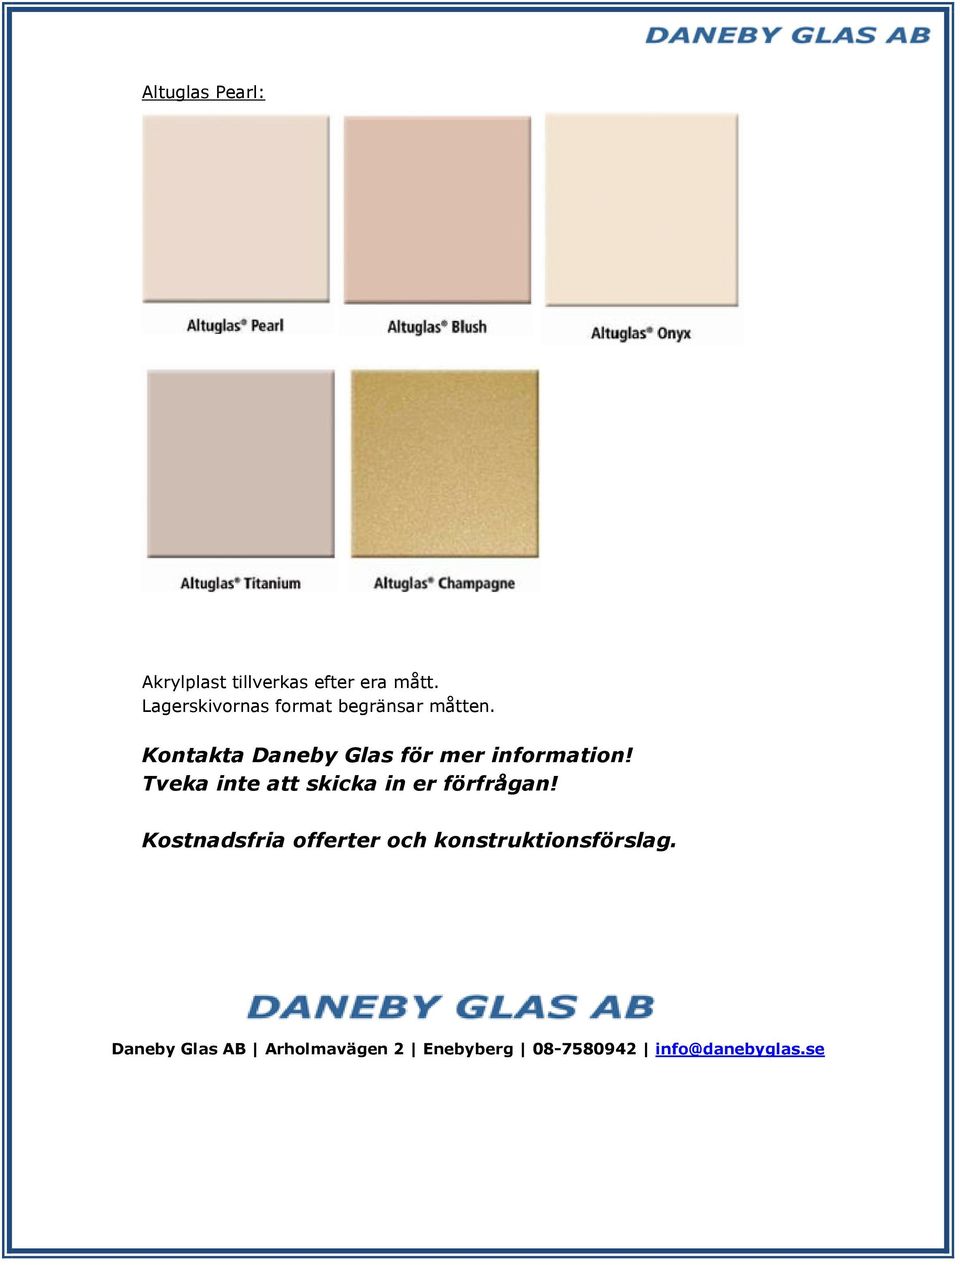 Kontakta Daneby Glas för mer information!